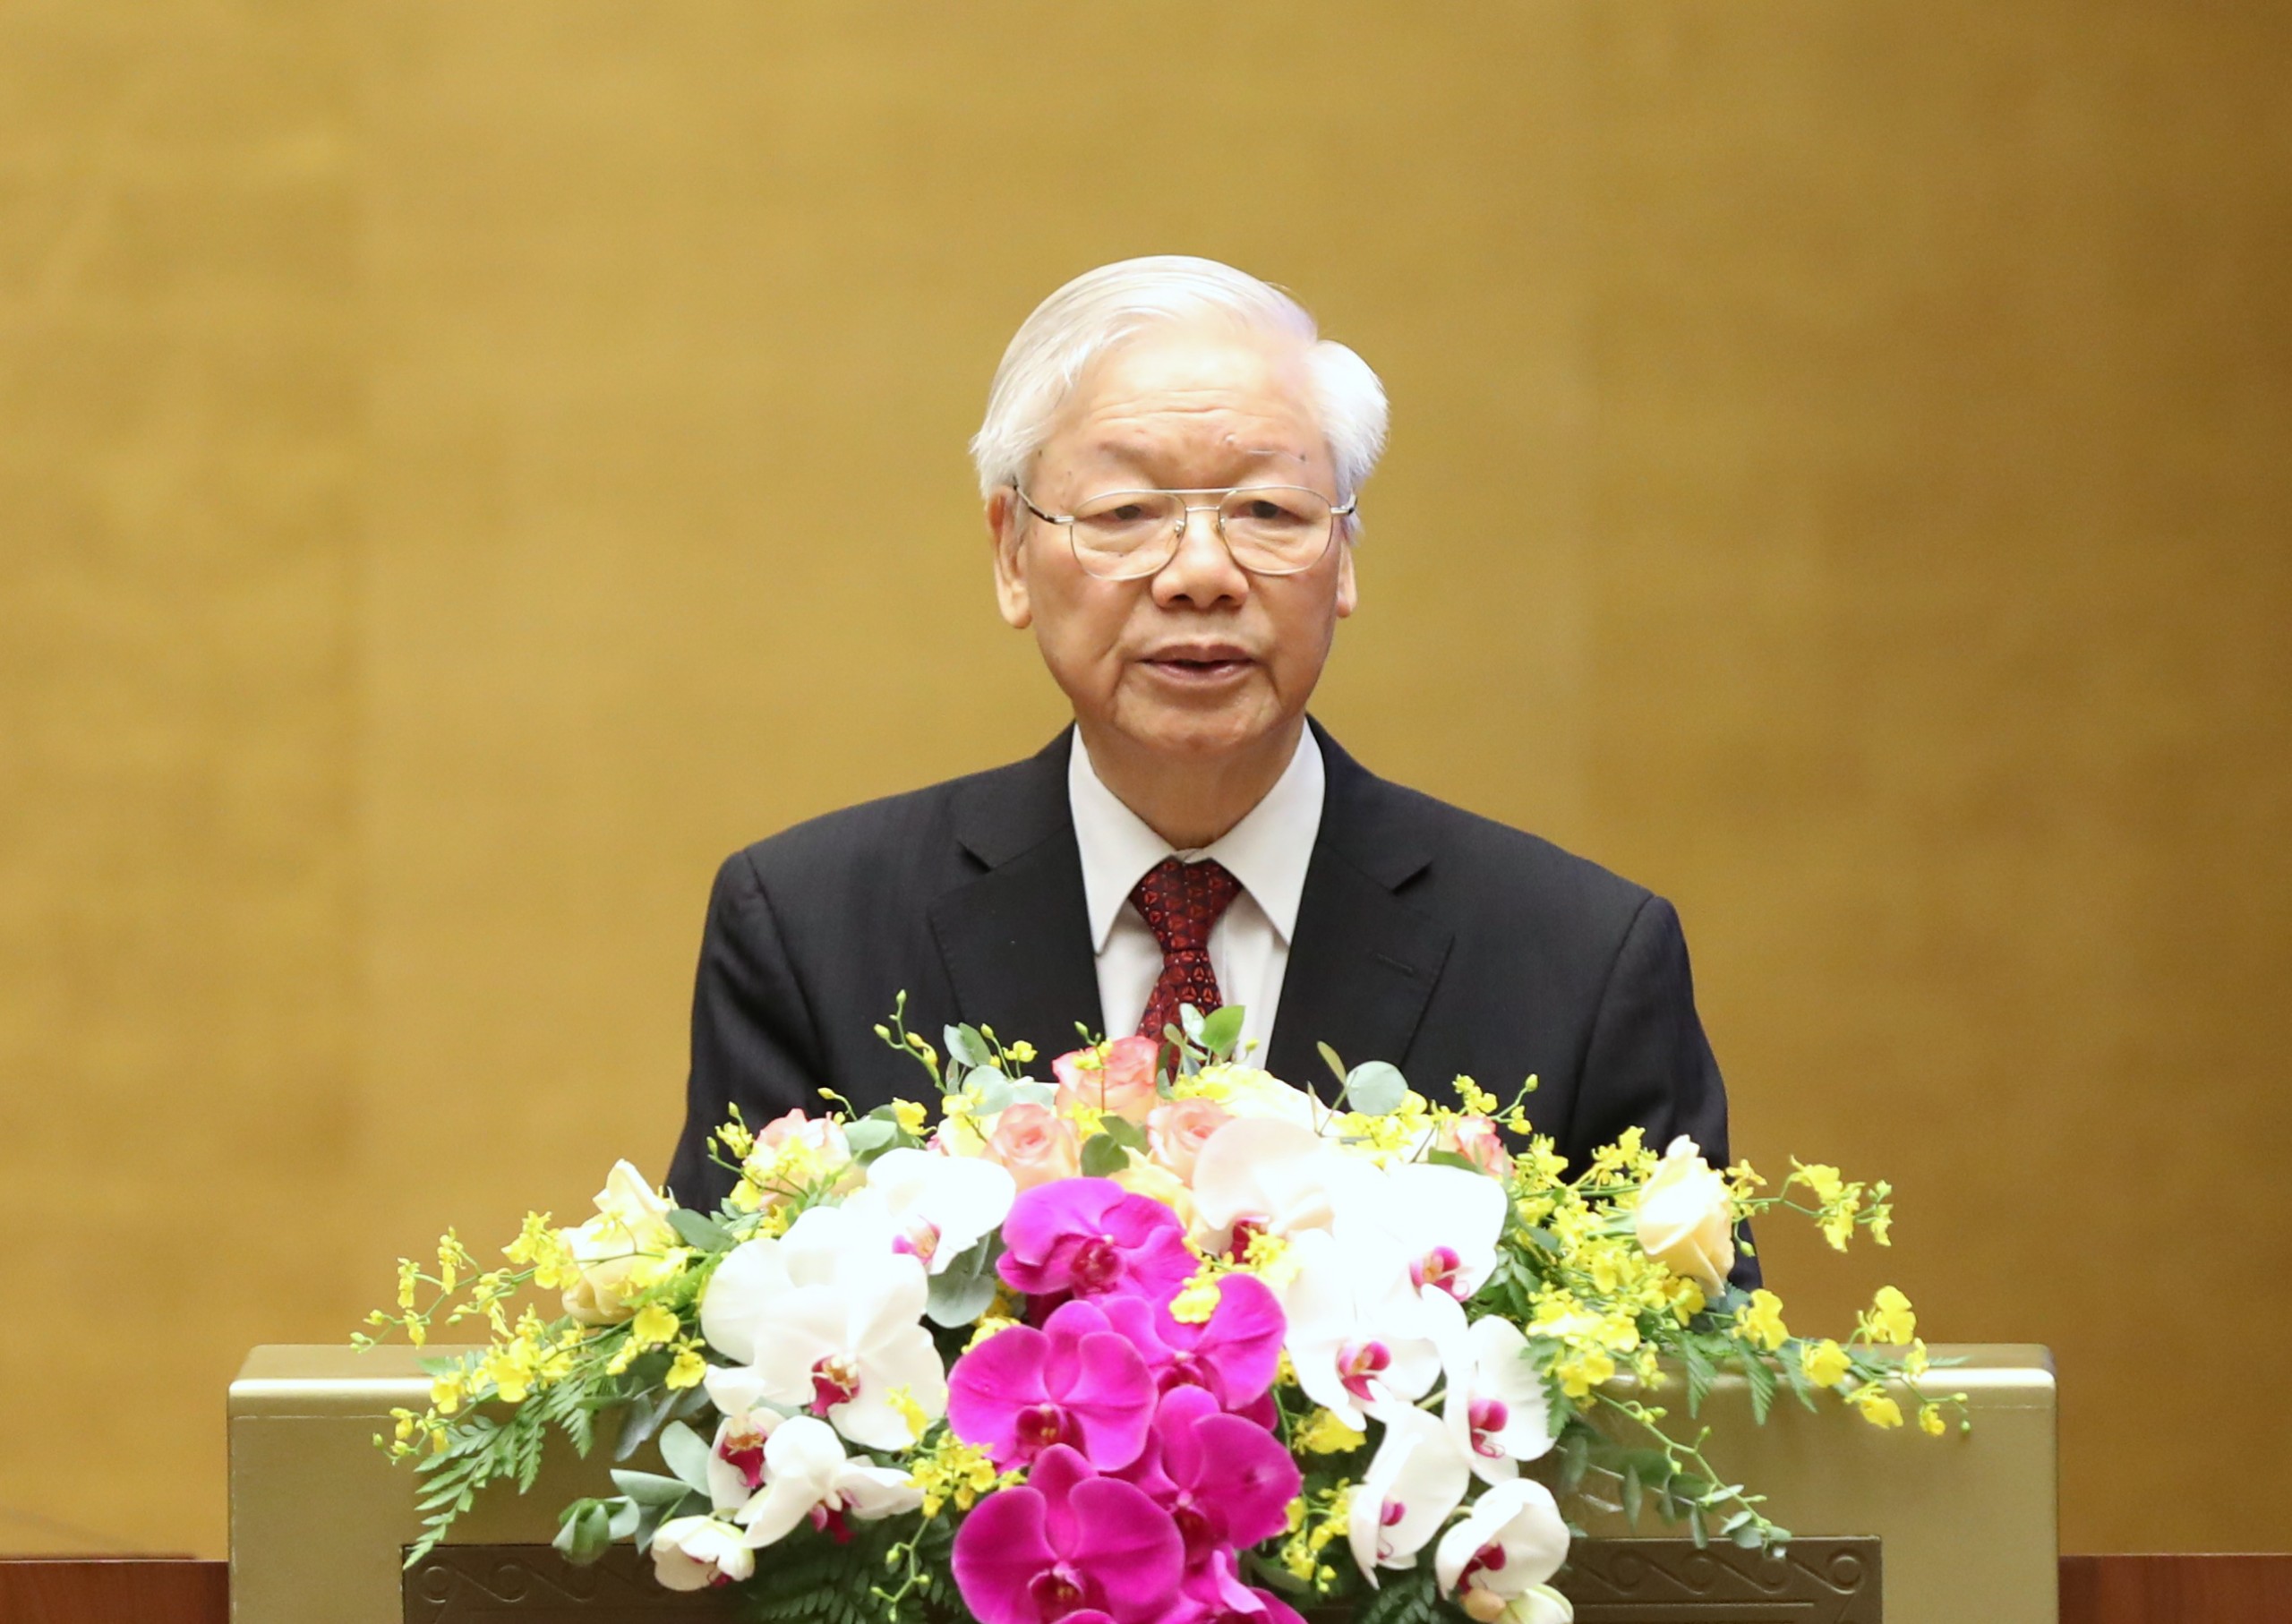 Tổng Bí thư Nguyễn Phú Trọng phát biểu tại Hội nghị toàn quốc sơ kết 5 năm thực hiện Chỉ thị số 05 của Bộ Chính trị về ''Đẩy mạnh học tập và làm theo tư tưởng, đạo đức, phong cách Hồ Chí Minh''. Ảnh: VGP/Nhật Bắc